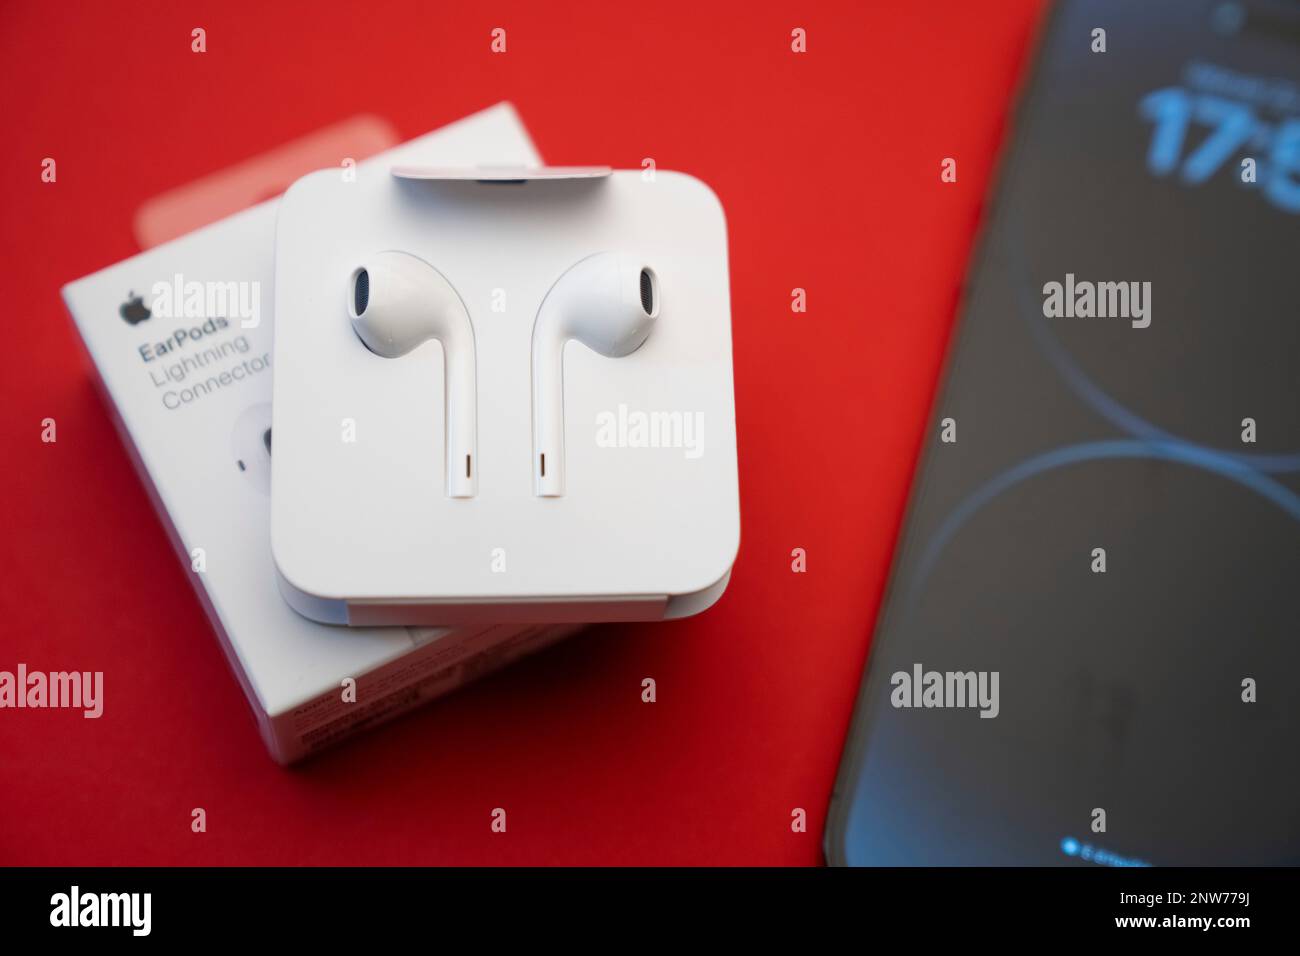 Nuevo iPhone 14 pro max y Apple EarPods, auriculares AirPods blancos para  escuchar música y podcasts en una caja abierta. Fondo rojo aislado.  Budapest Fotografía de stock - Alamy